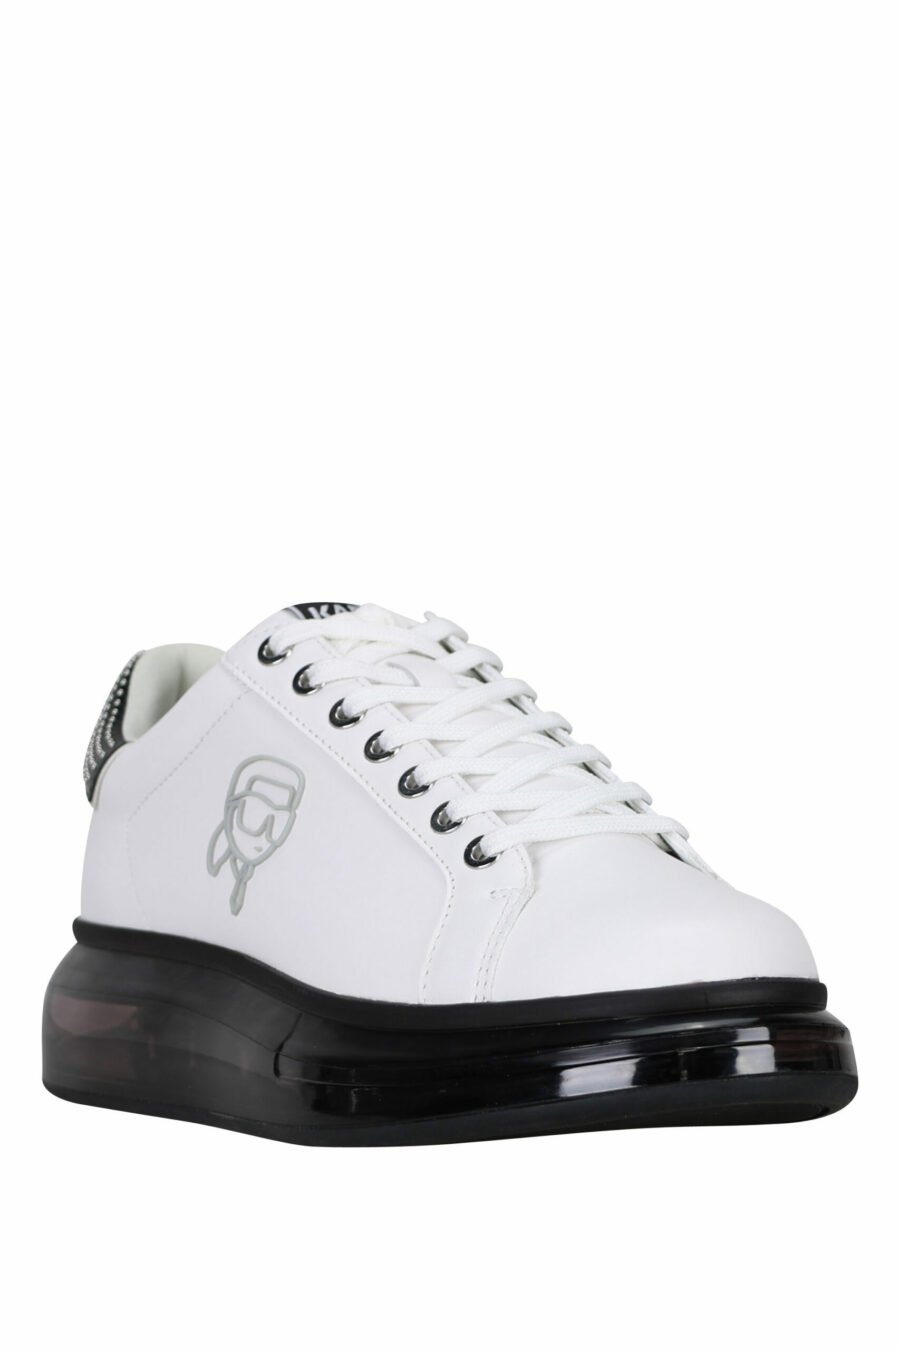 Zapatillas blancas "kapri fushion" con suela negra y logo en contorno - 5059529363467 1 scaled